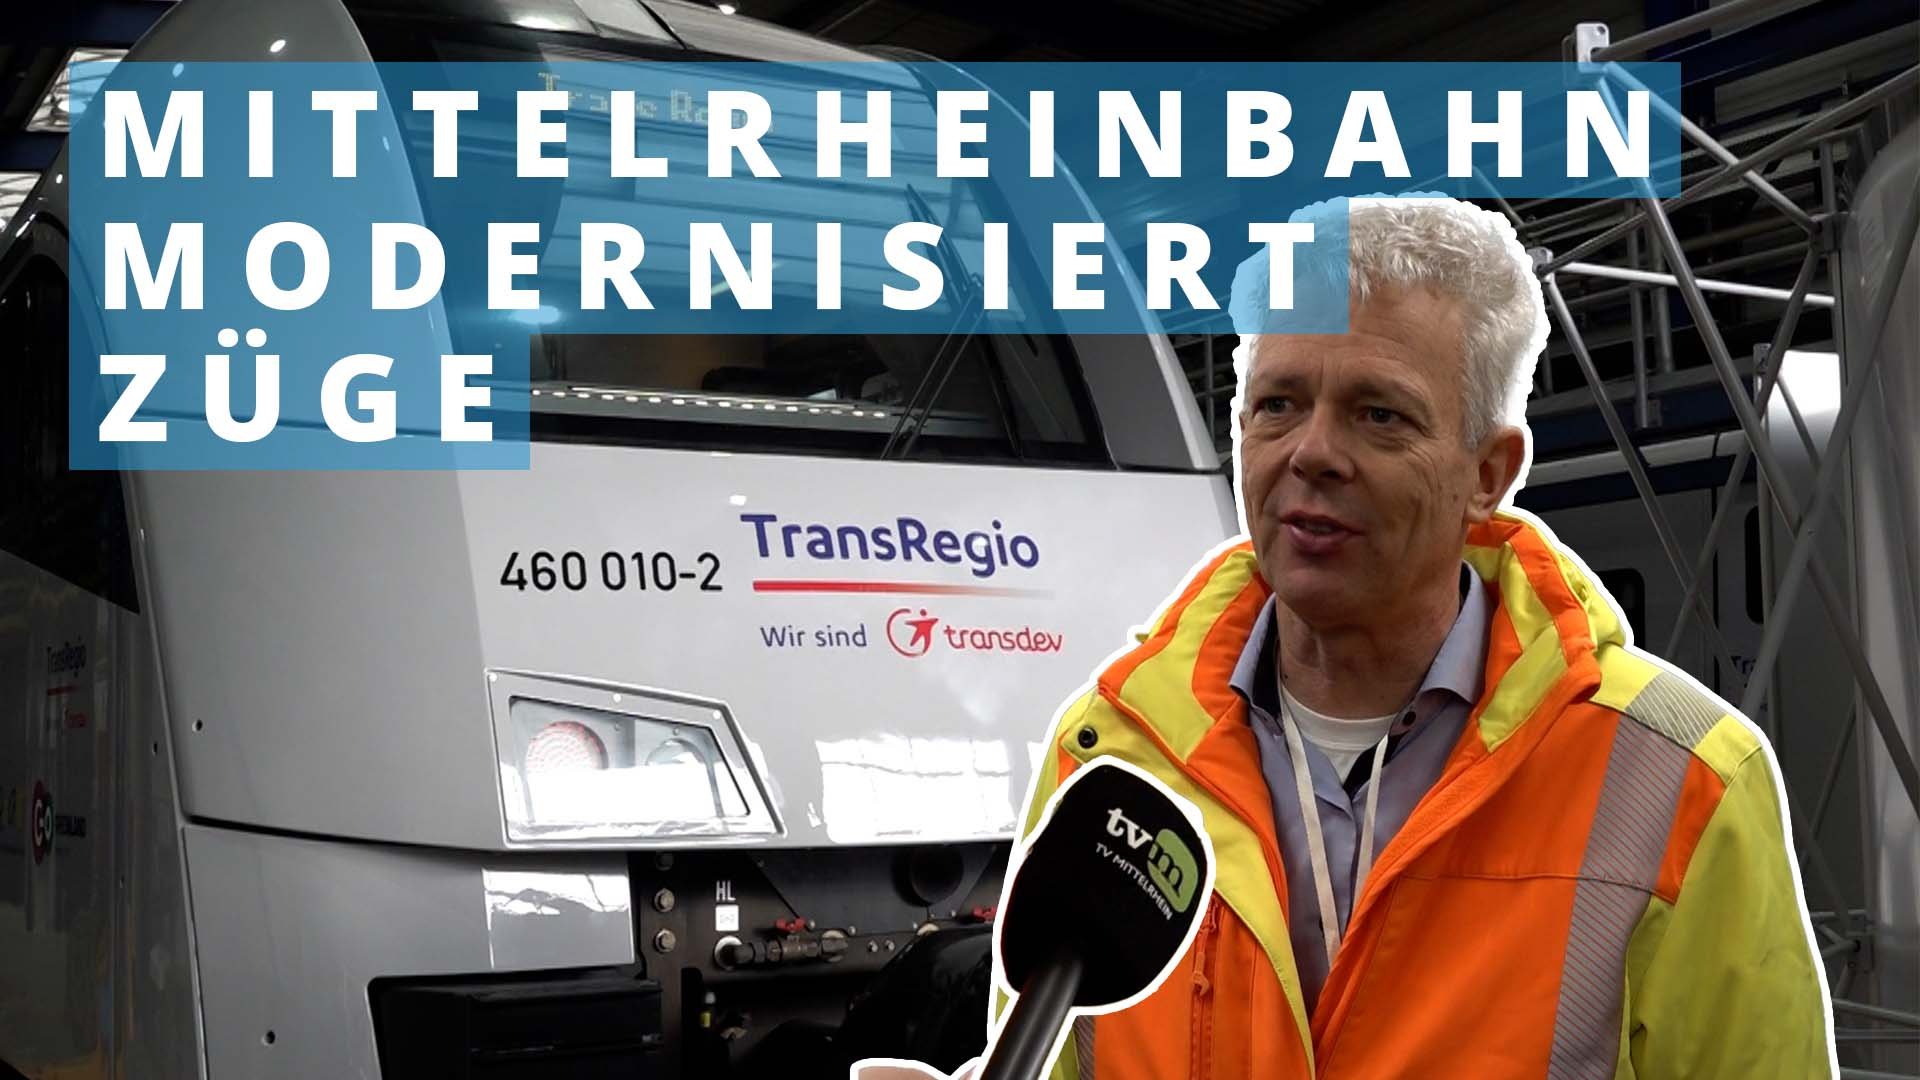 Trans Regio stellt modernisierte Züge der Mittelrheinbahn vor